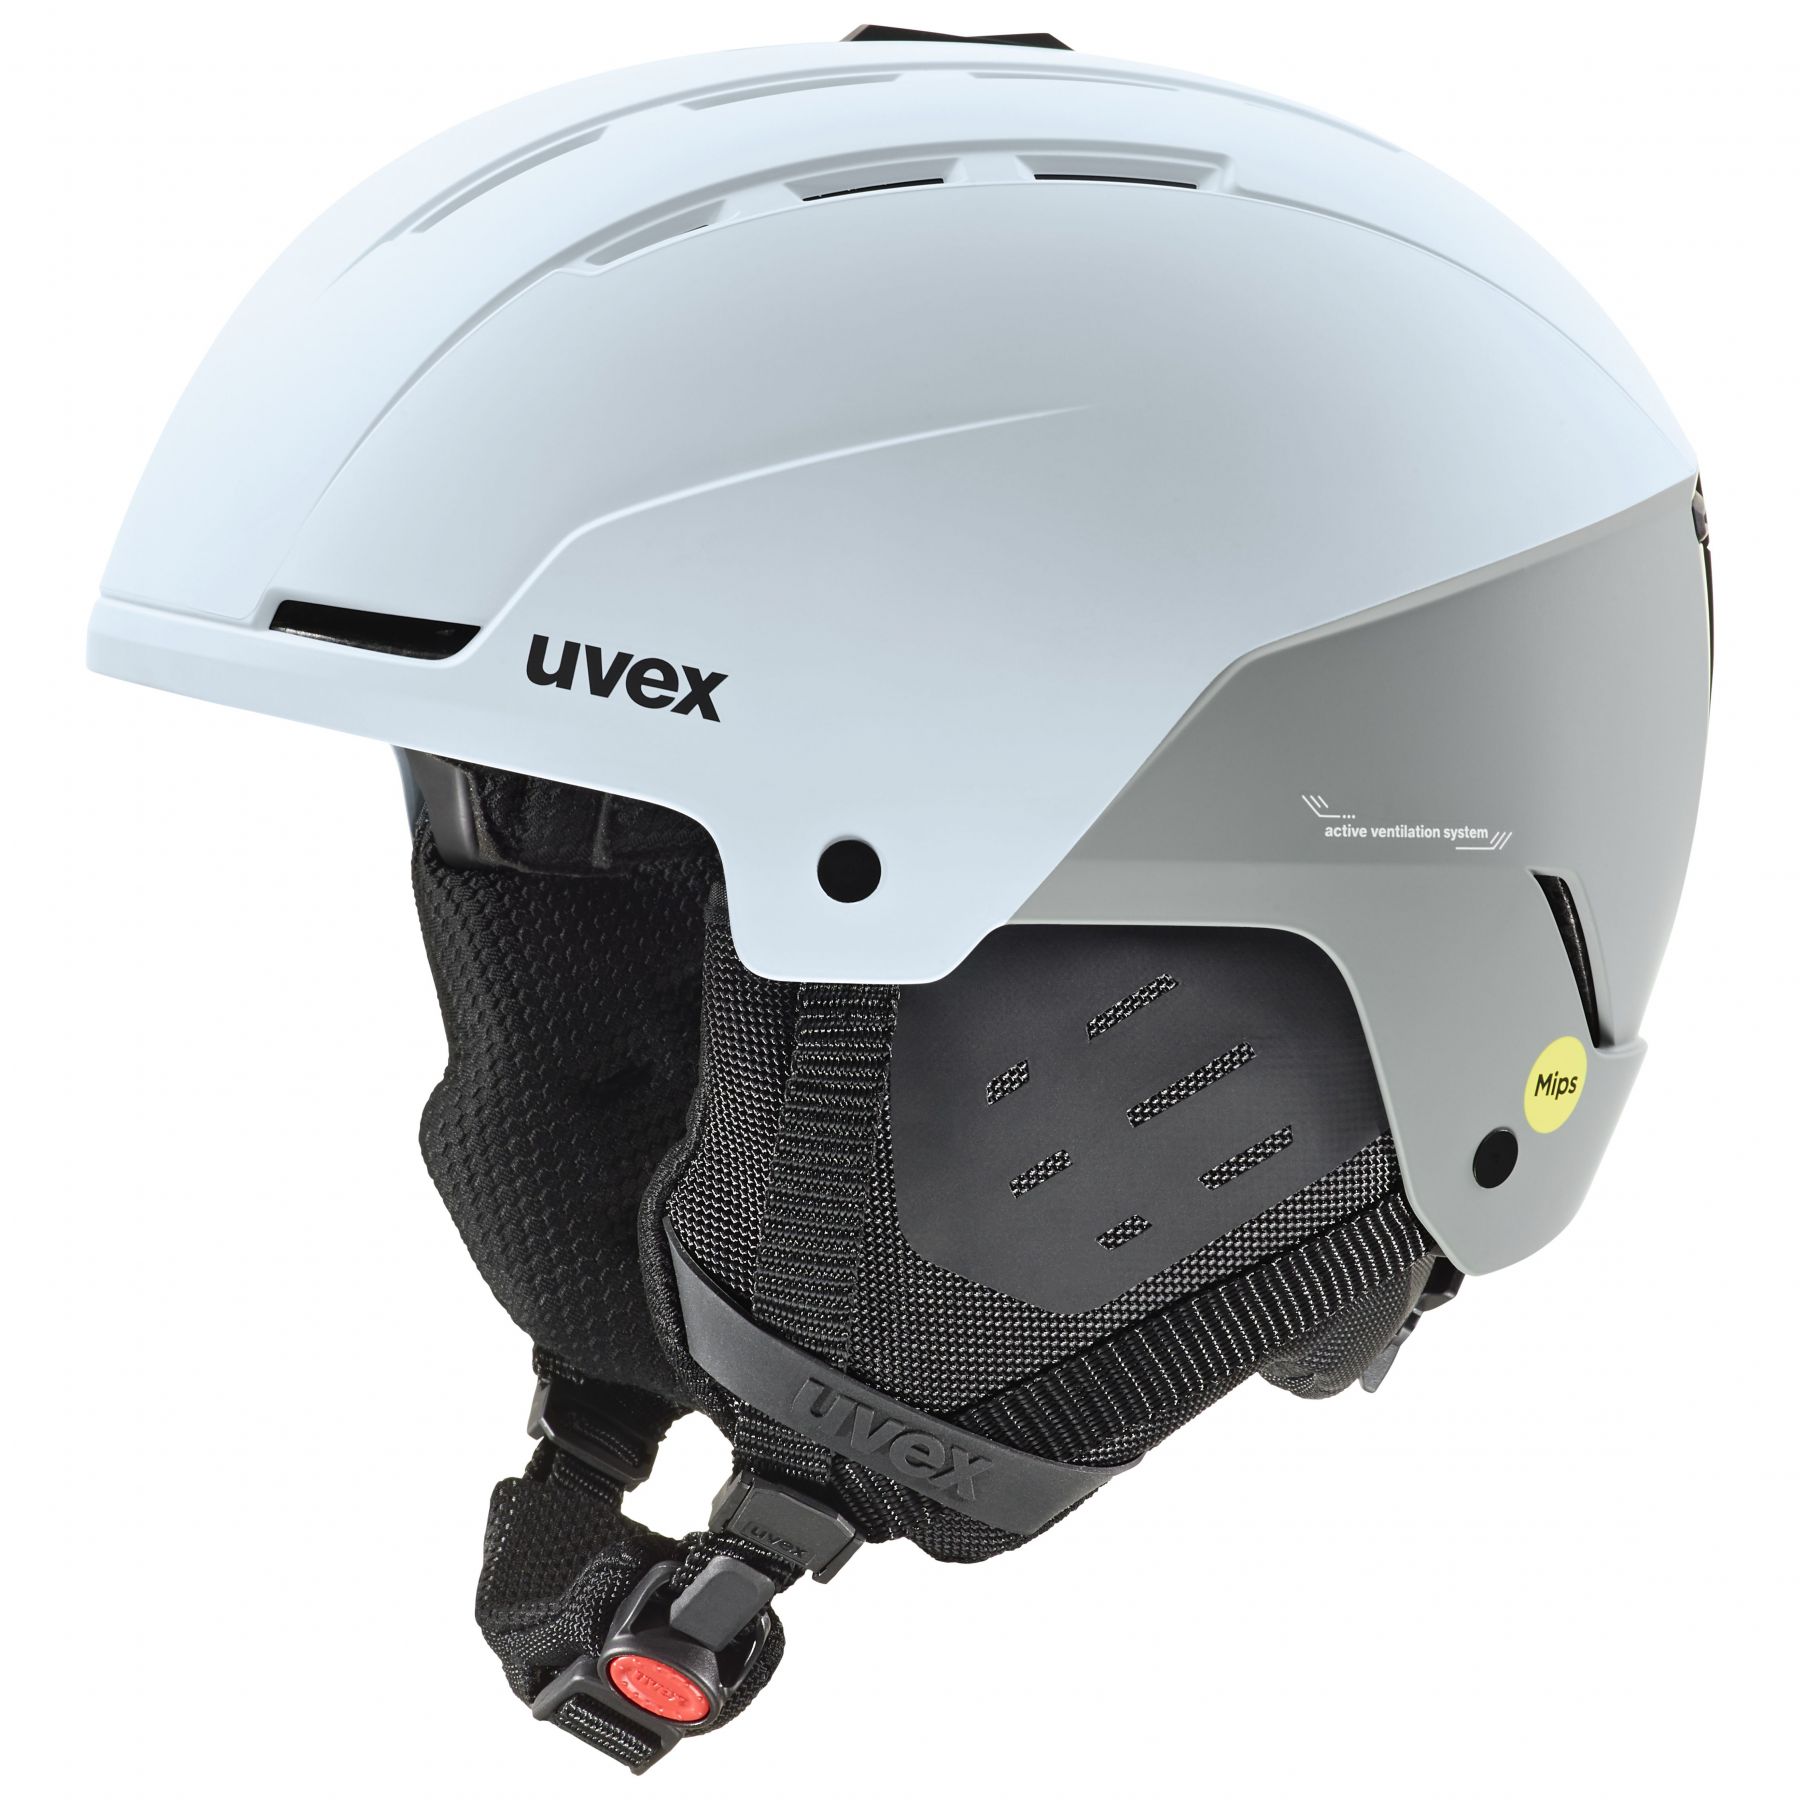 Brug Uvex Stance MIPS, skihjelm, lyseblå/grå til en forbedret oplevelse